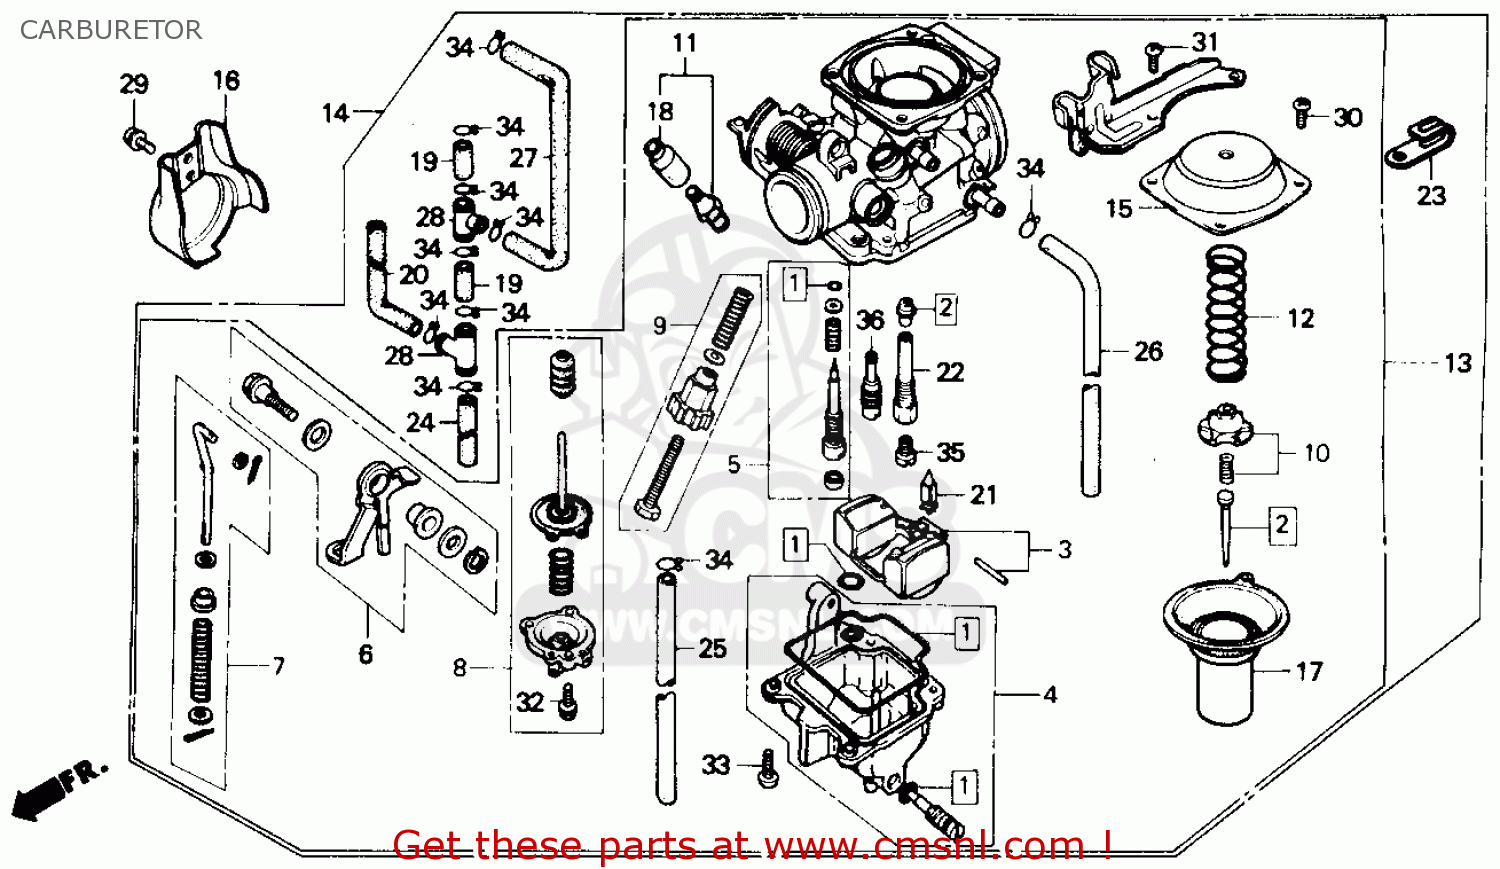 1985 Honda rebel 250 carburetor rebuild kit #7